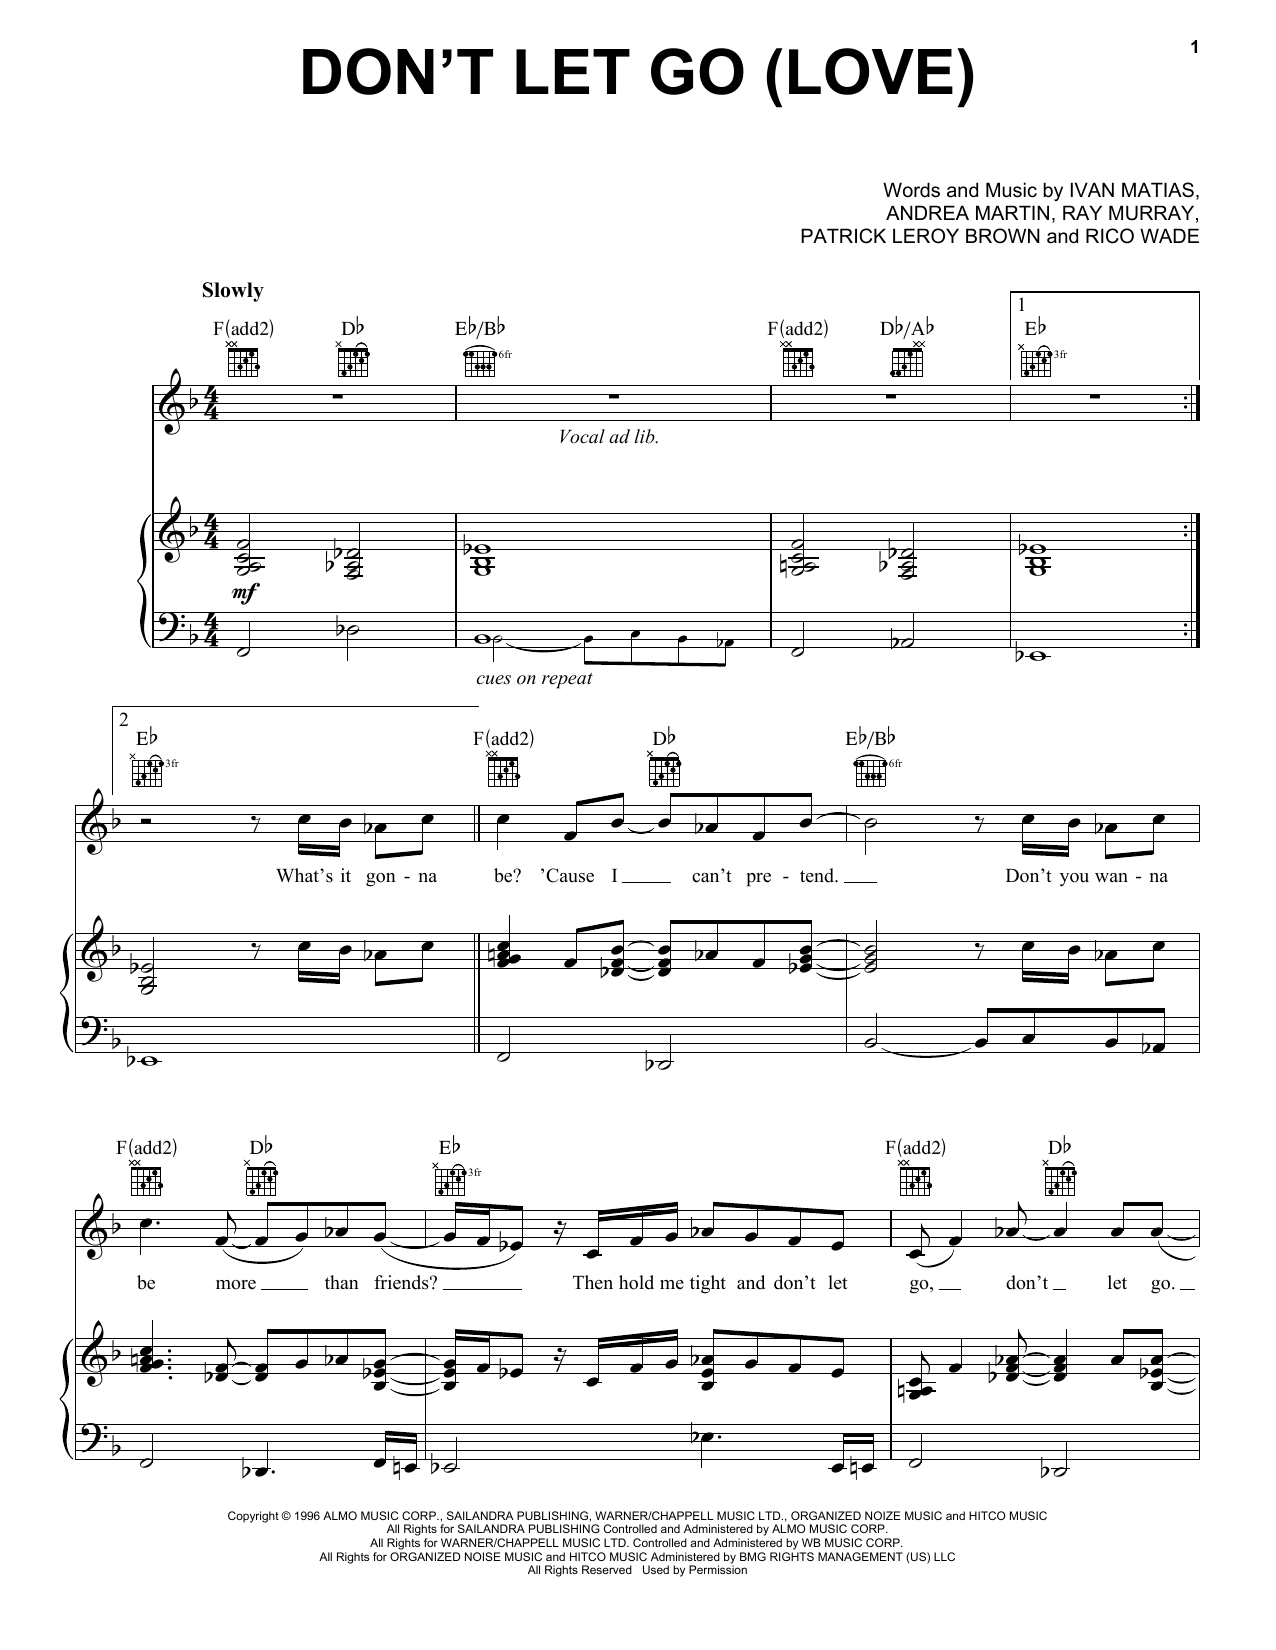 En Vogue Don't Let Go (Love) Sheet Music Notes & Chords for Keyboard - Download or Print PDF